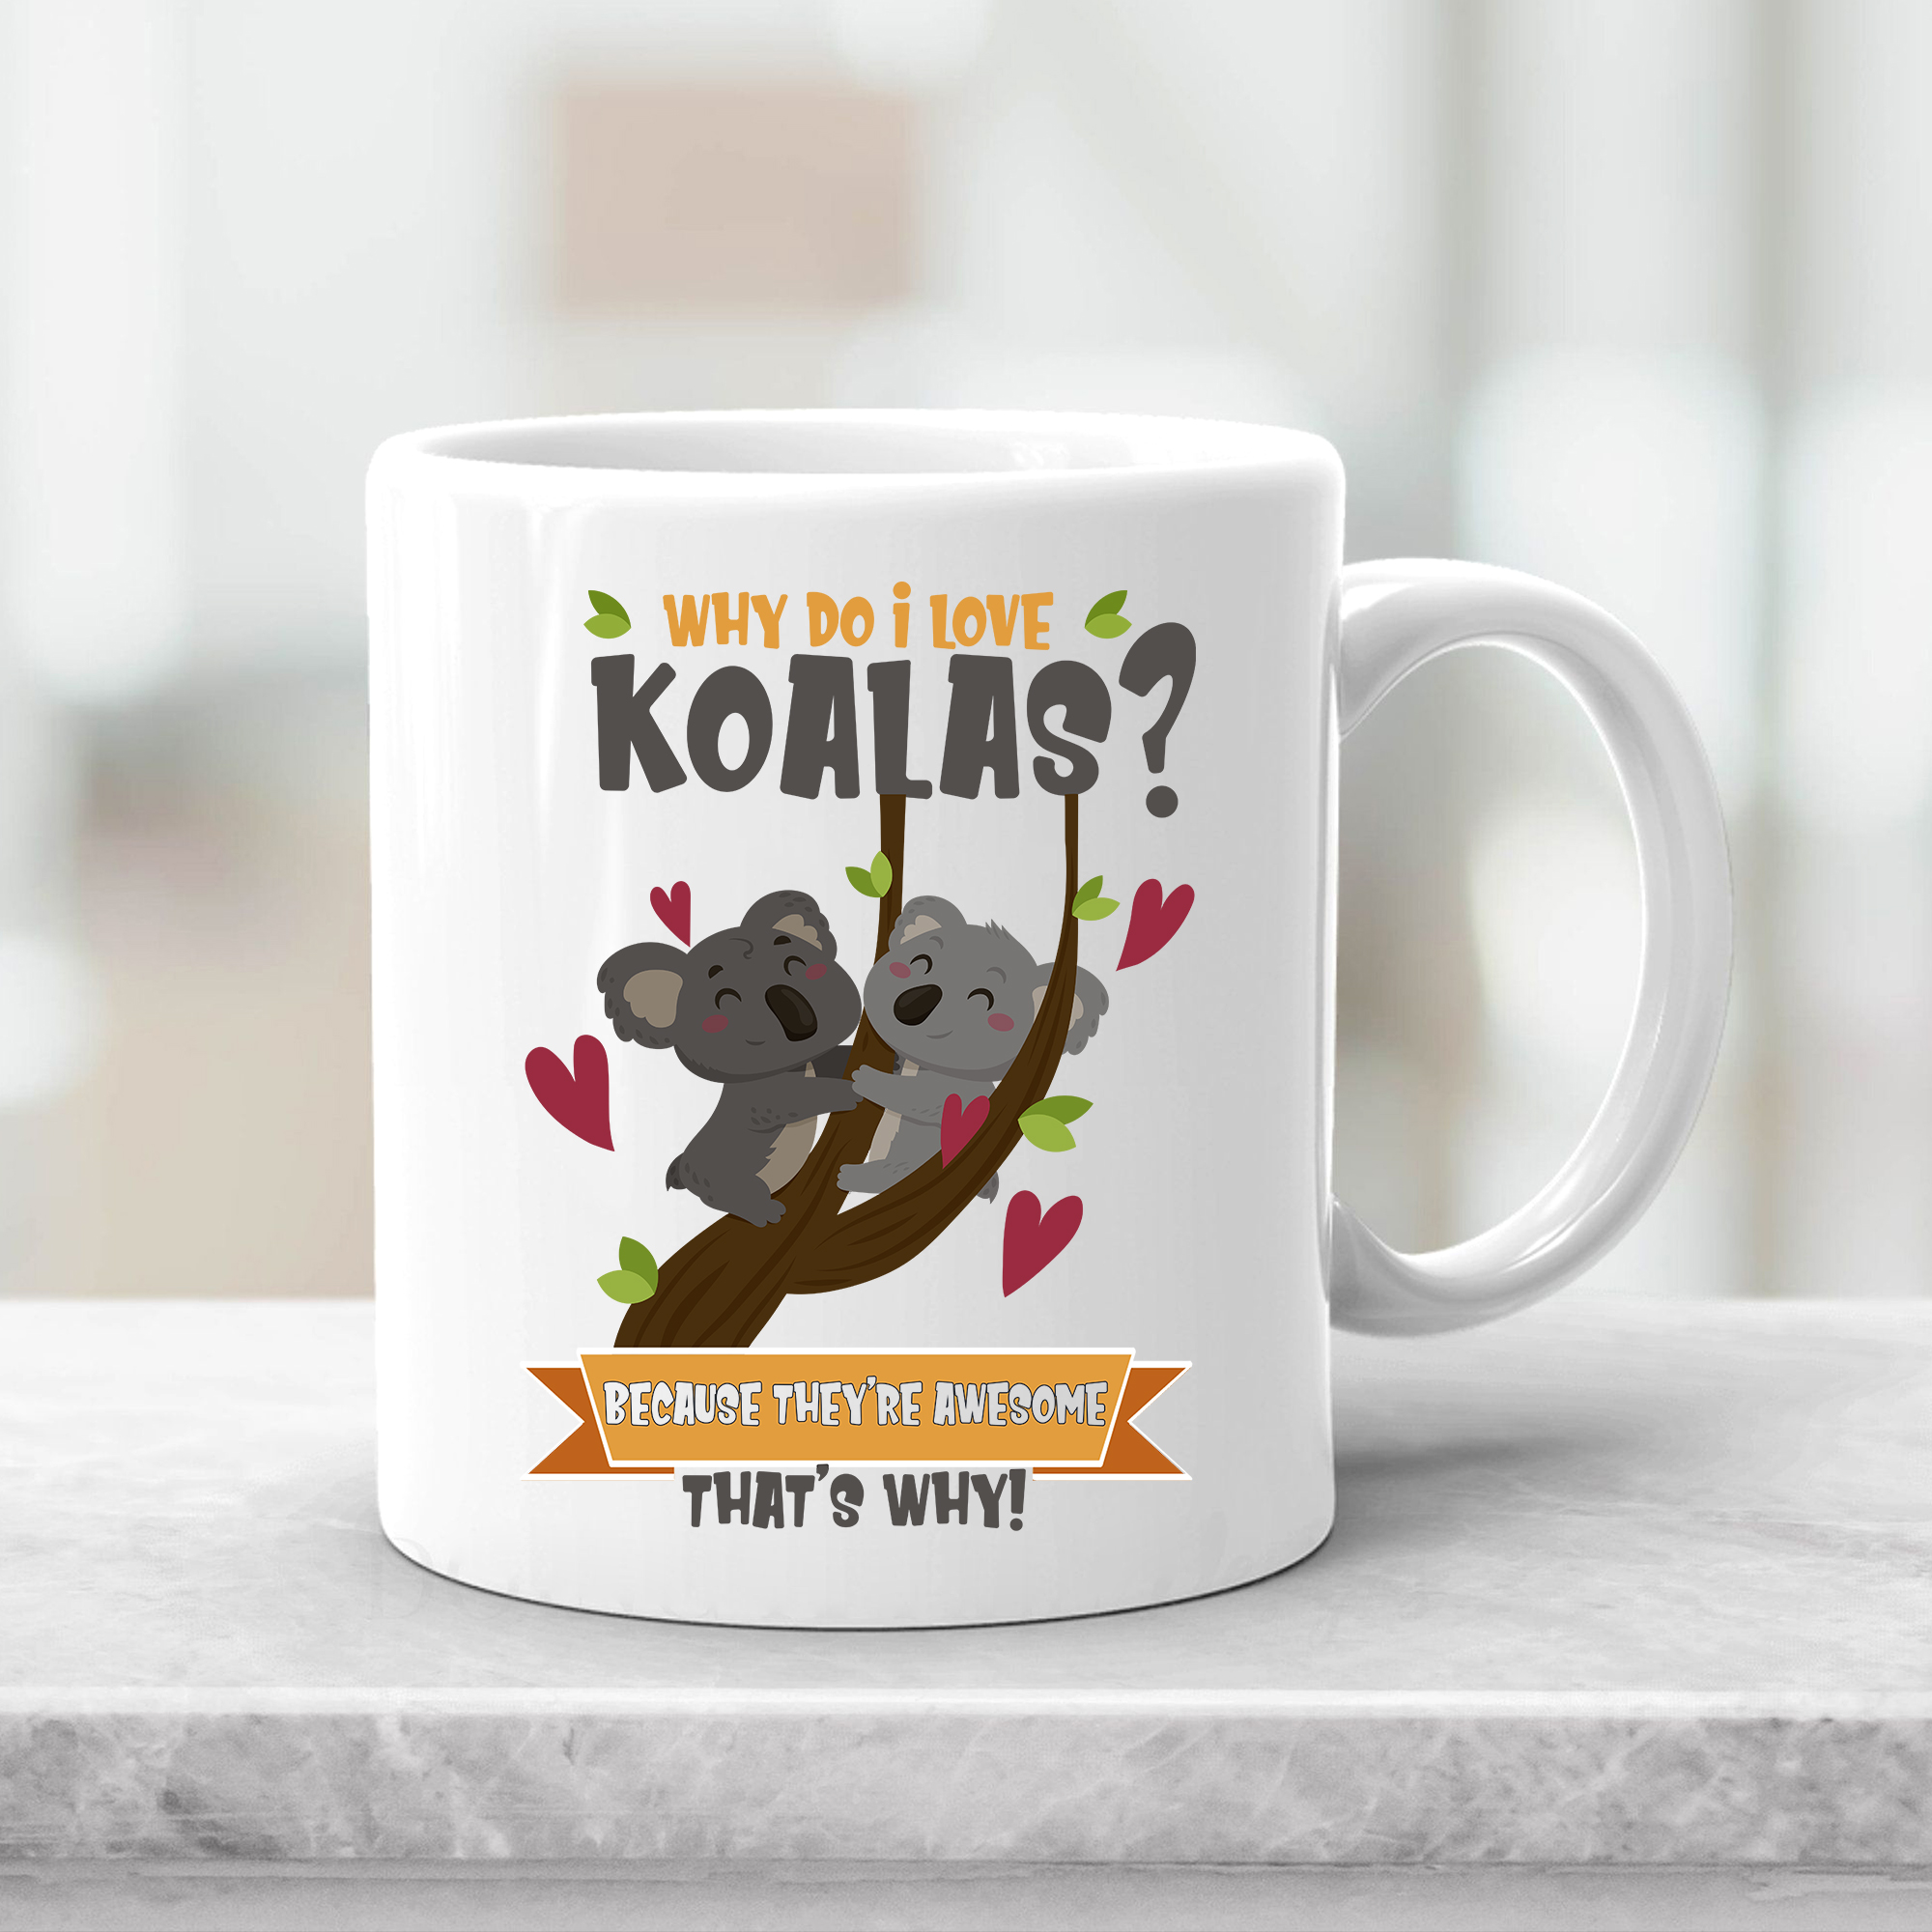 I Love Koalas Mug , Cute Koala Mug,Koala Bear Mug, Koala Coffee Mug ,Koala  Lover Mug,Cute Koala Gift Idea,Funny Koala Gift Mug - Buy t-shirt designs